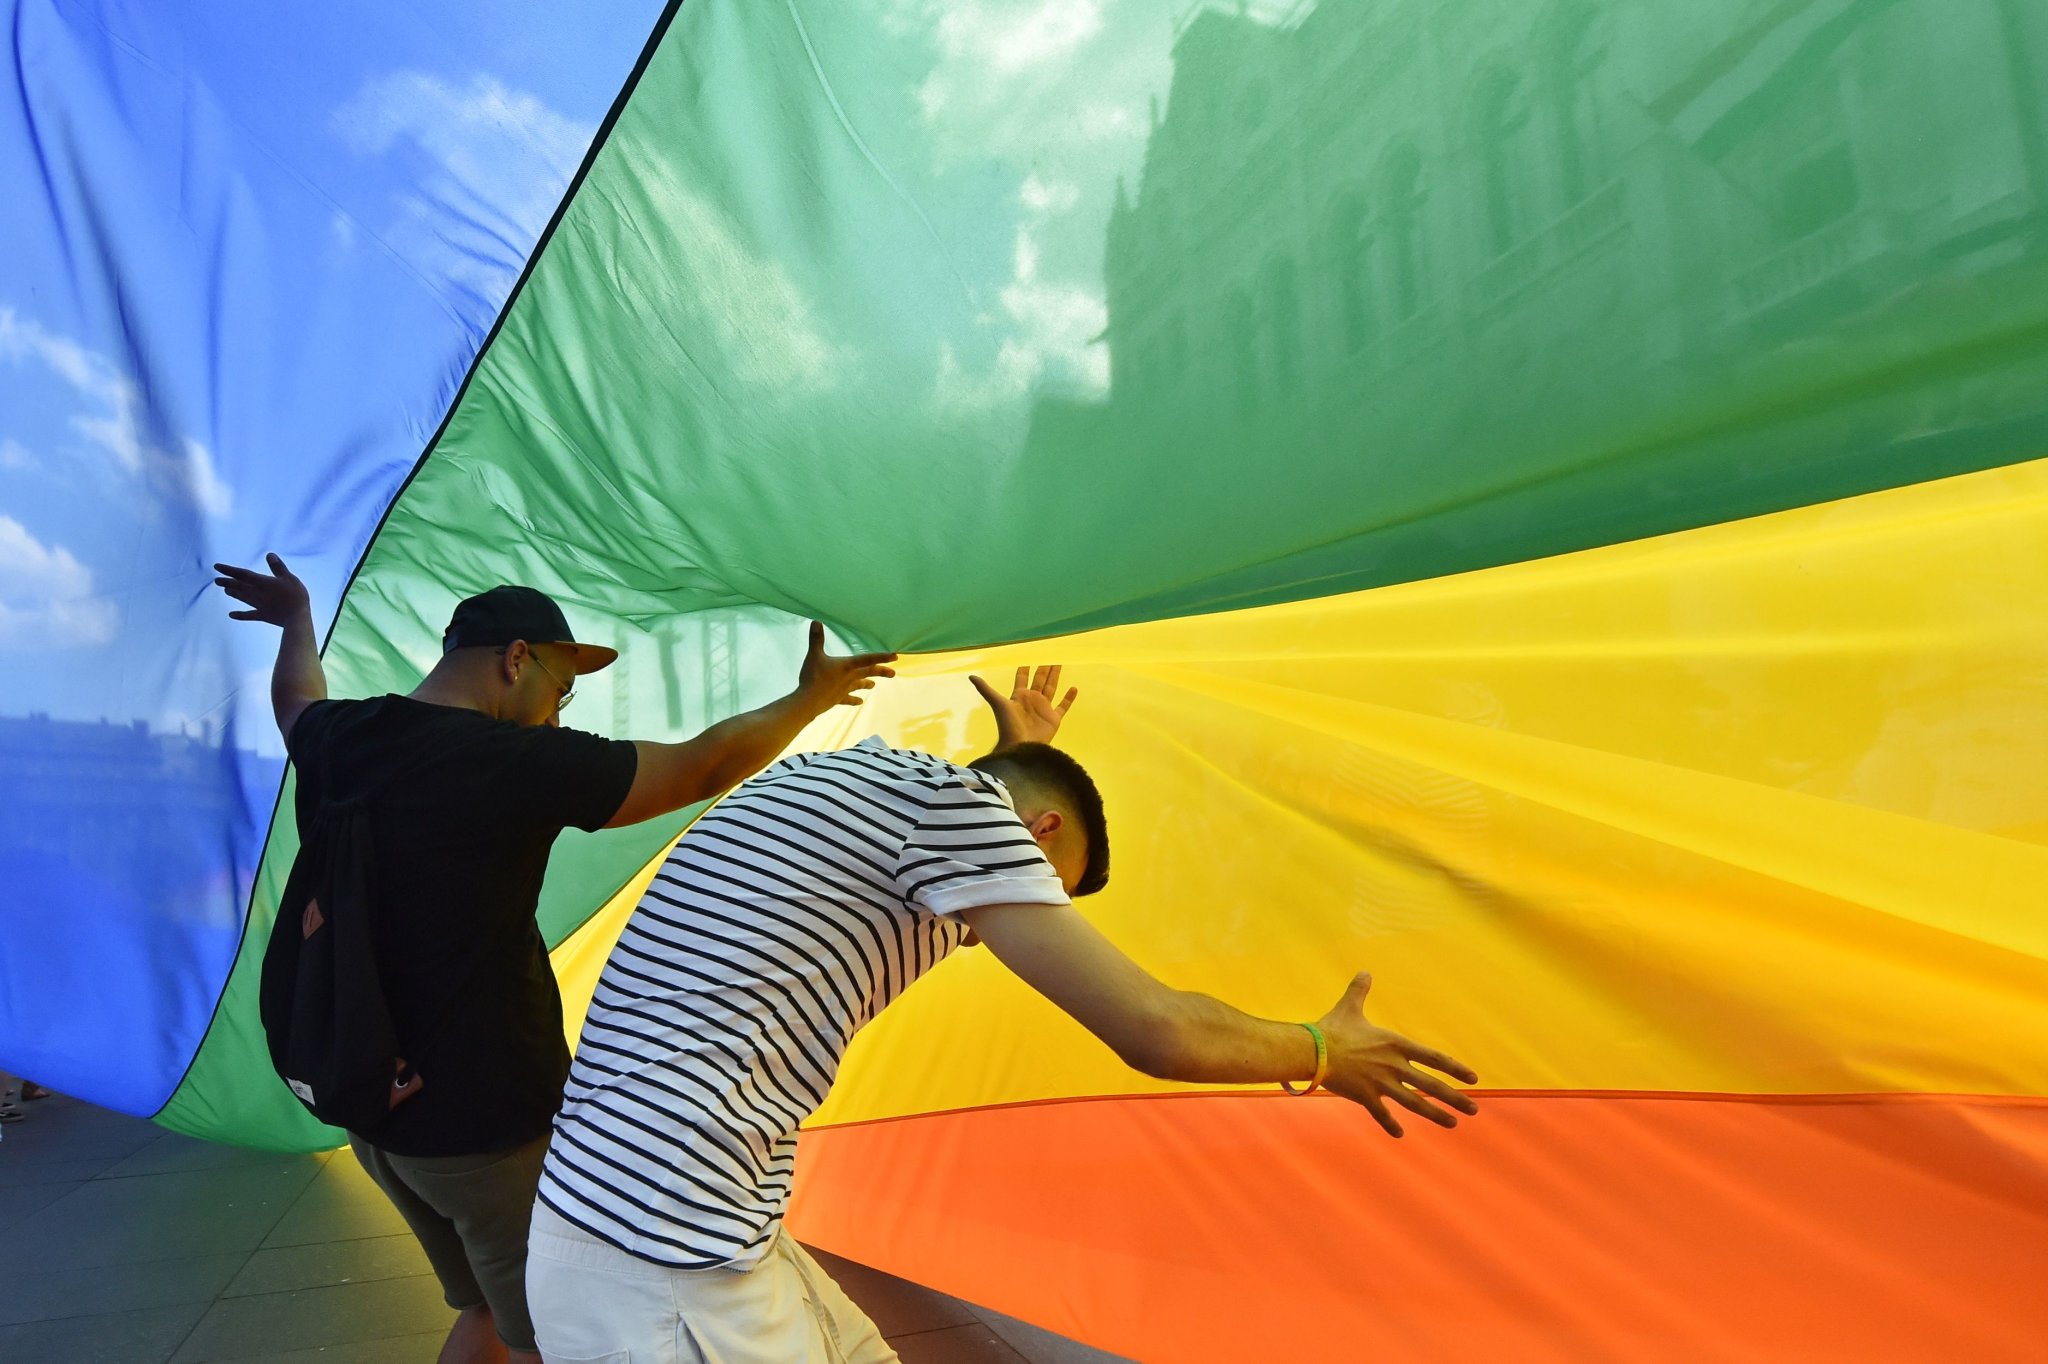 L'Ungheria vieta per legge la "promozione dell'omosessualità ai minori", ma in che senso scusate?